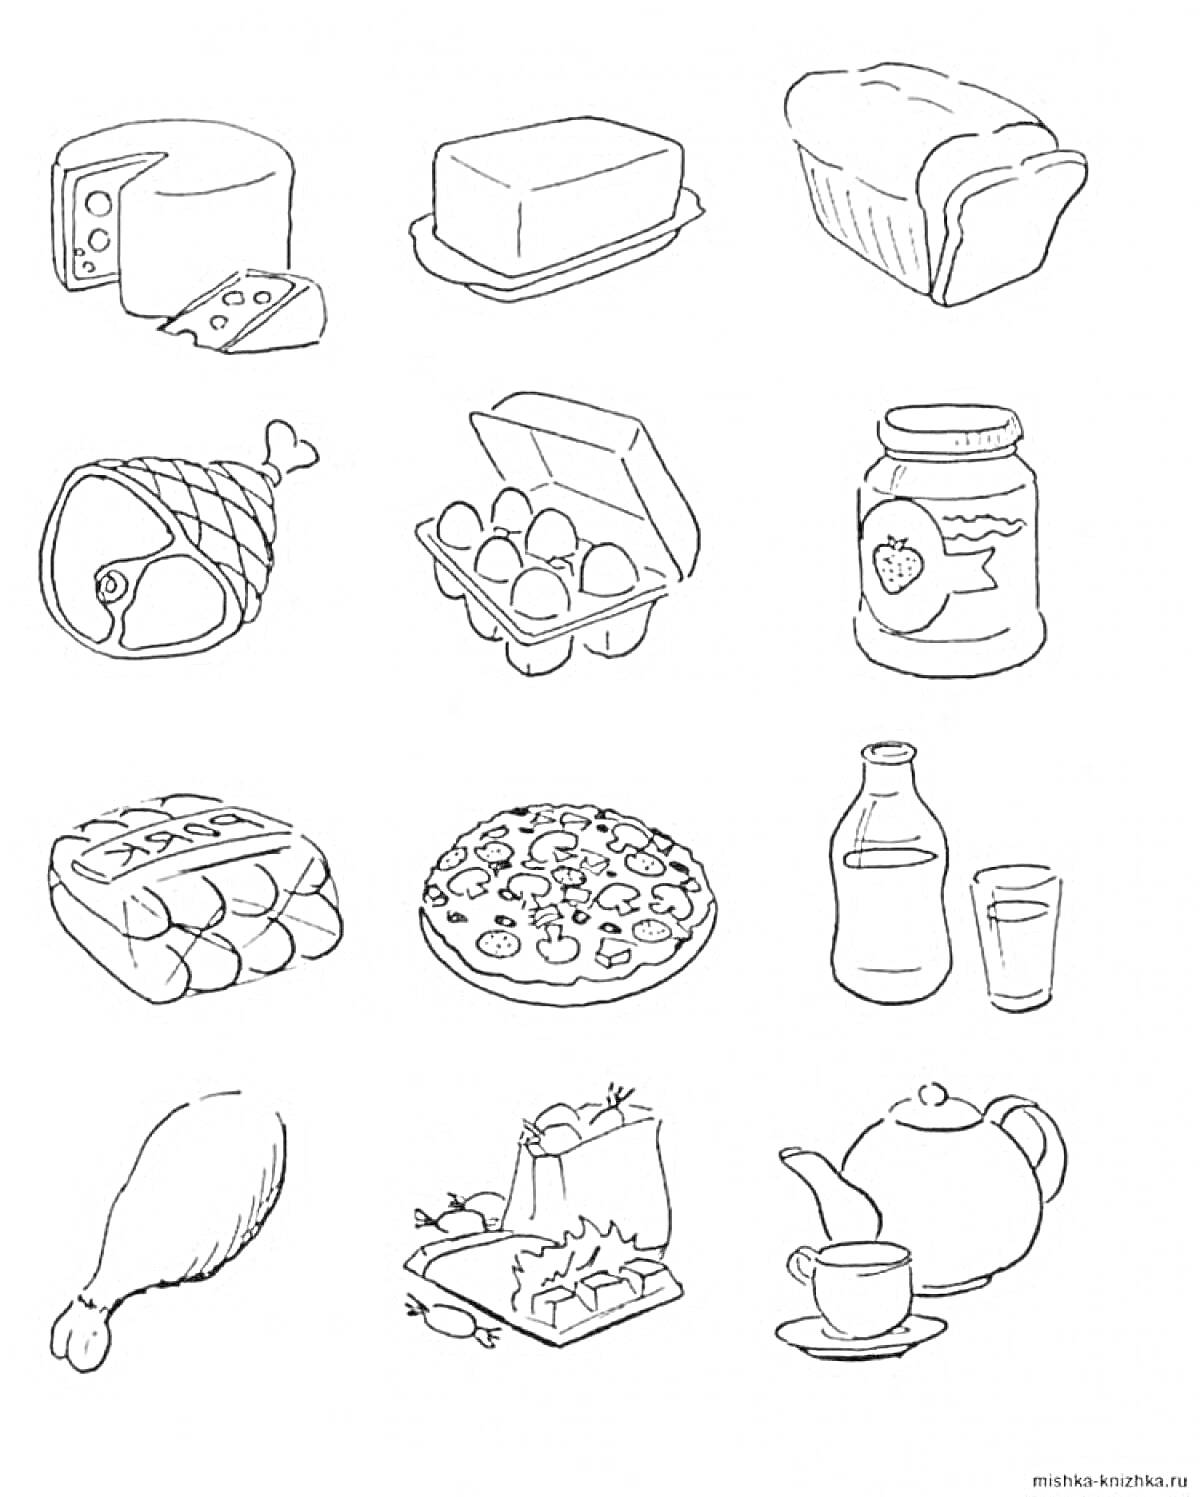 Сыр, масло, хлеб, ветчина, яйца, банка с клубничным джемом, батон хлеба, пицца, бутылка молока и стакан, куриная ножка, коробка с суши, чайник и чашка